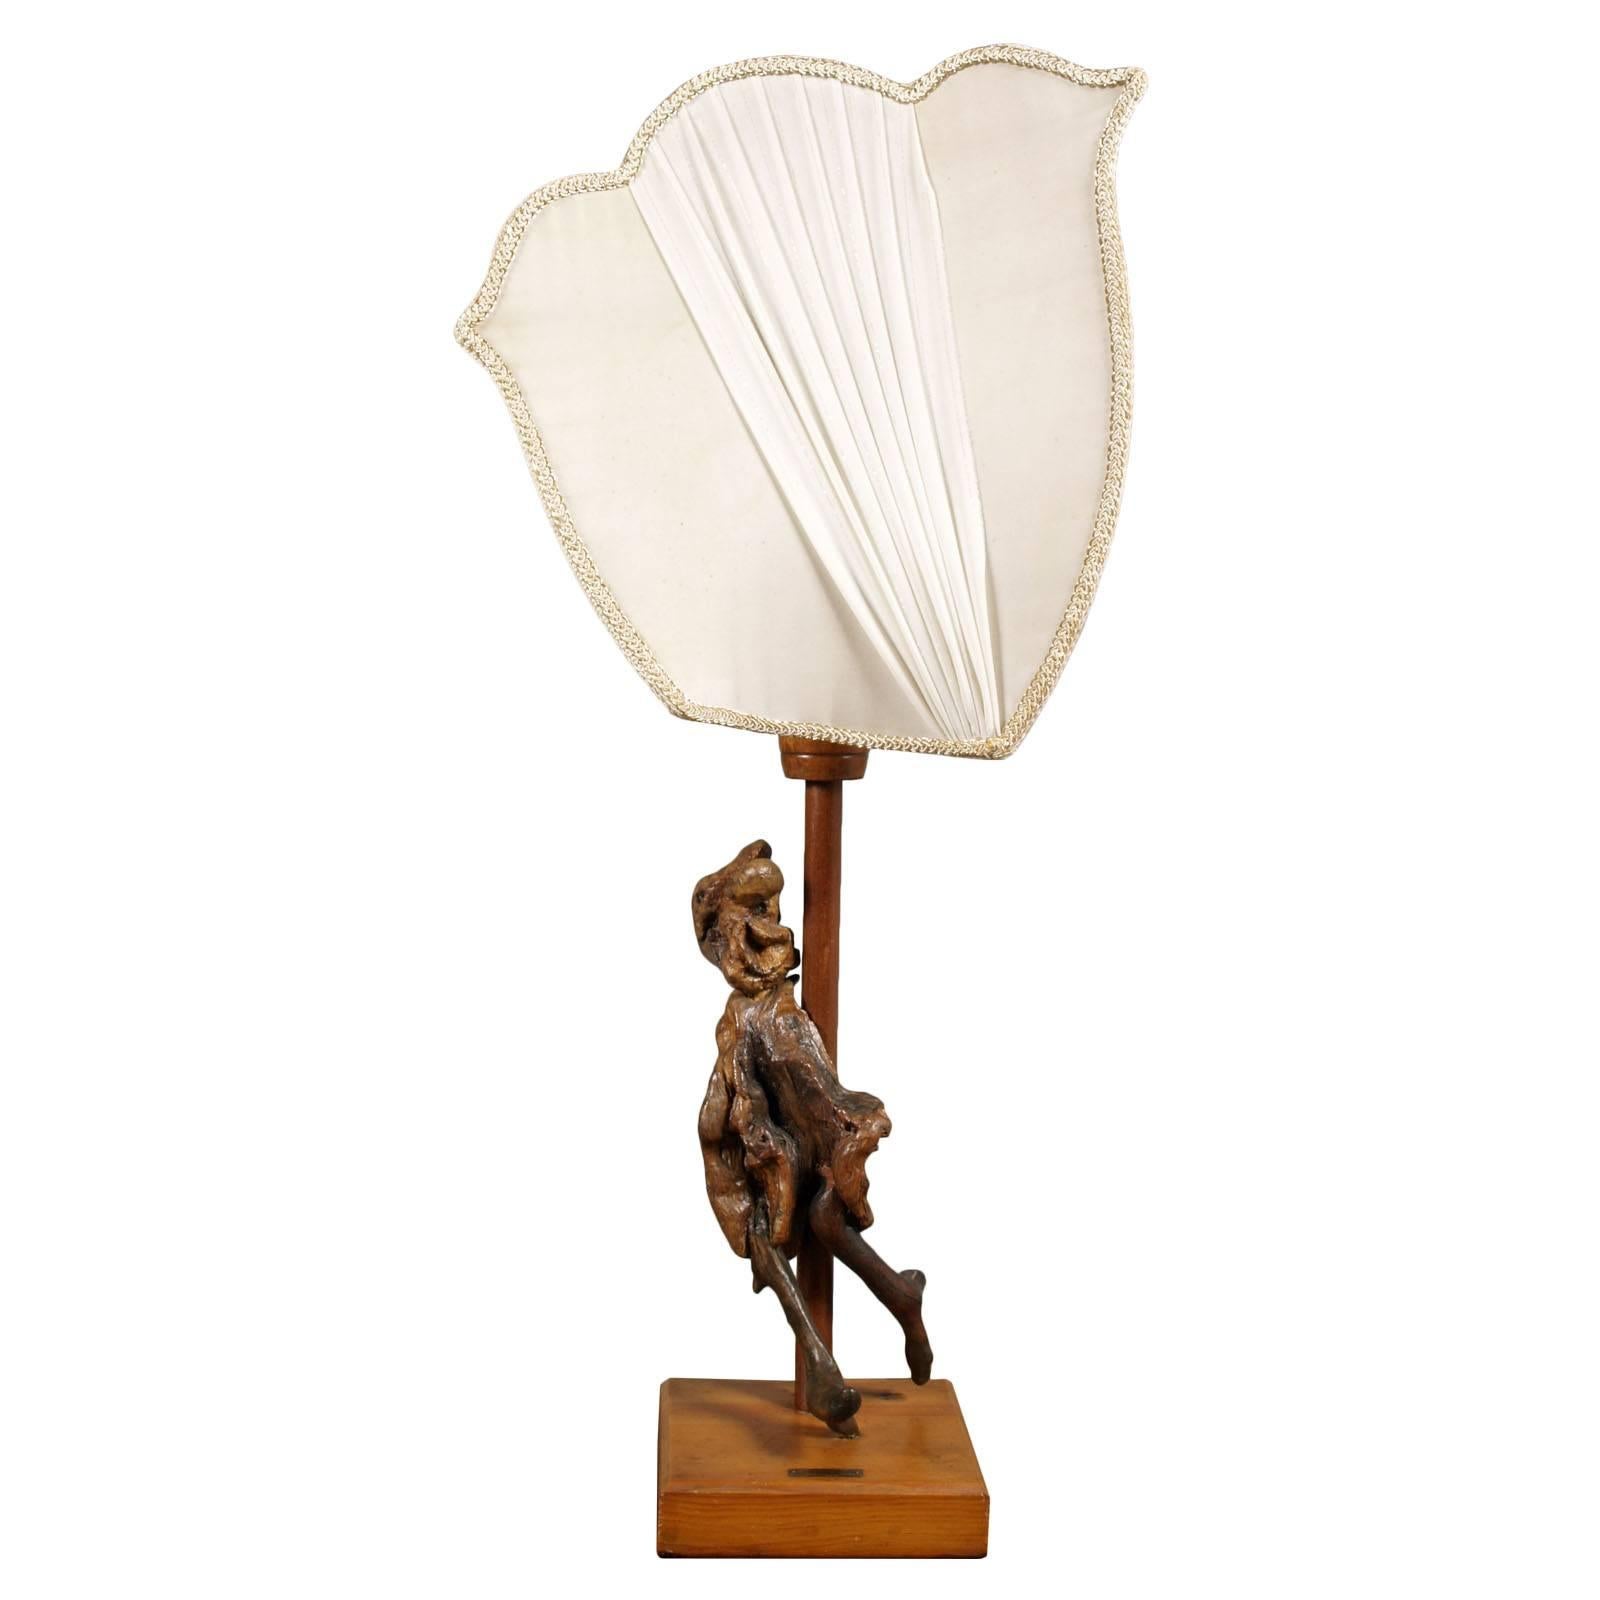 Tischlampe und Skulptur des berühmten italienischen Cellisten.

Maße in cm: Statue cm 40 Lampe cm 82 Basis cm 18 x 18

Anmerkungen
Giovanni Lauro Malusi wurde am 8. Juli 1922 in Cervia geboren. Sein Cello-Studium schloss er 1947 am